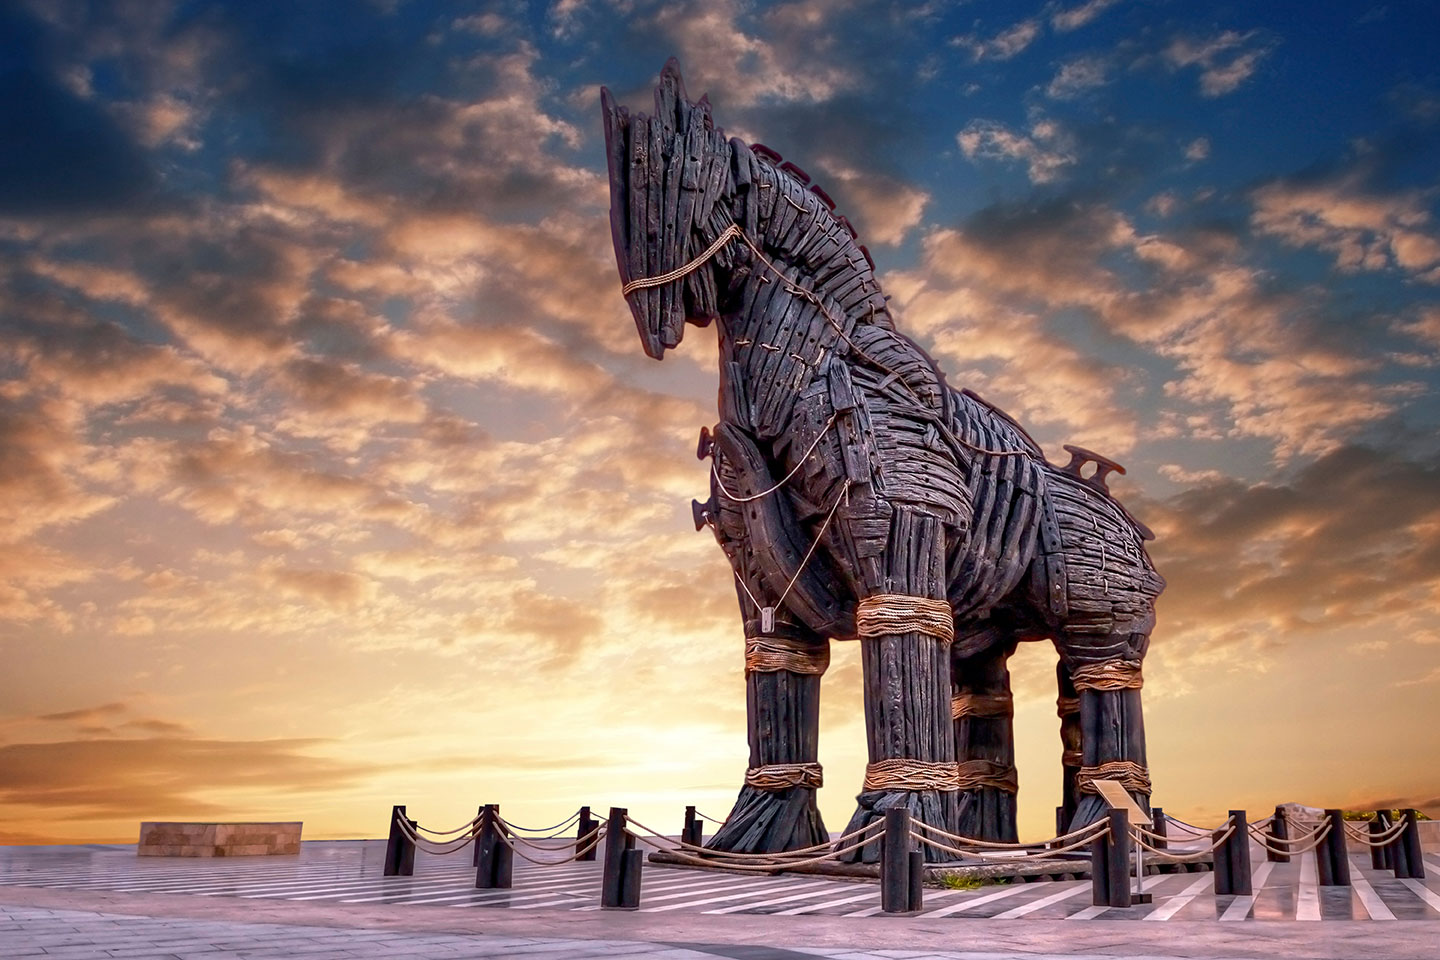 Building a safety case: The Trojan horse for digital asset optimisation ...